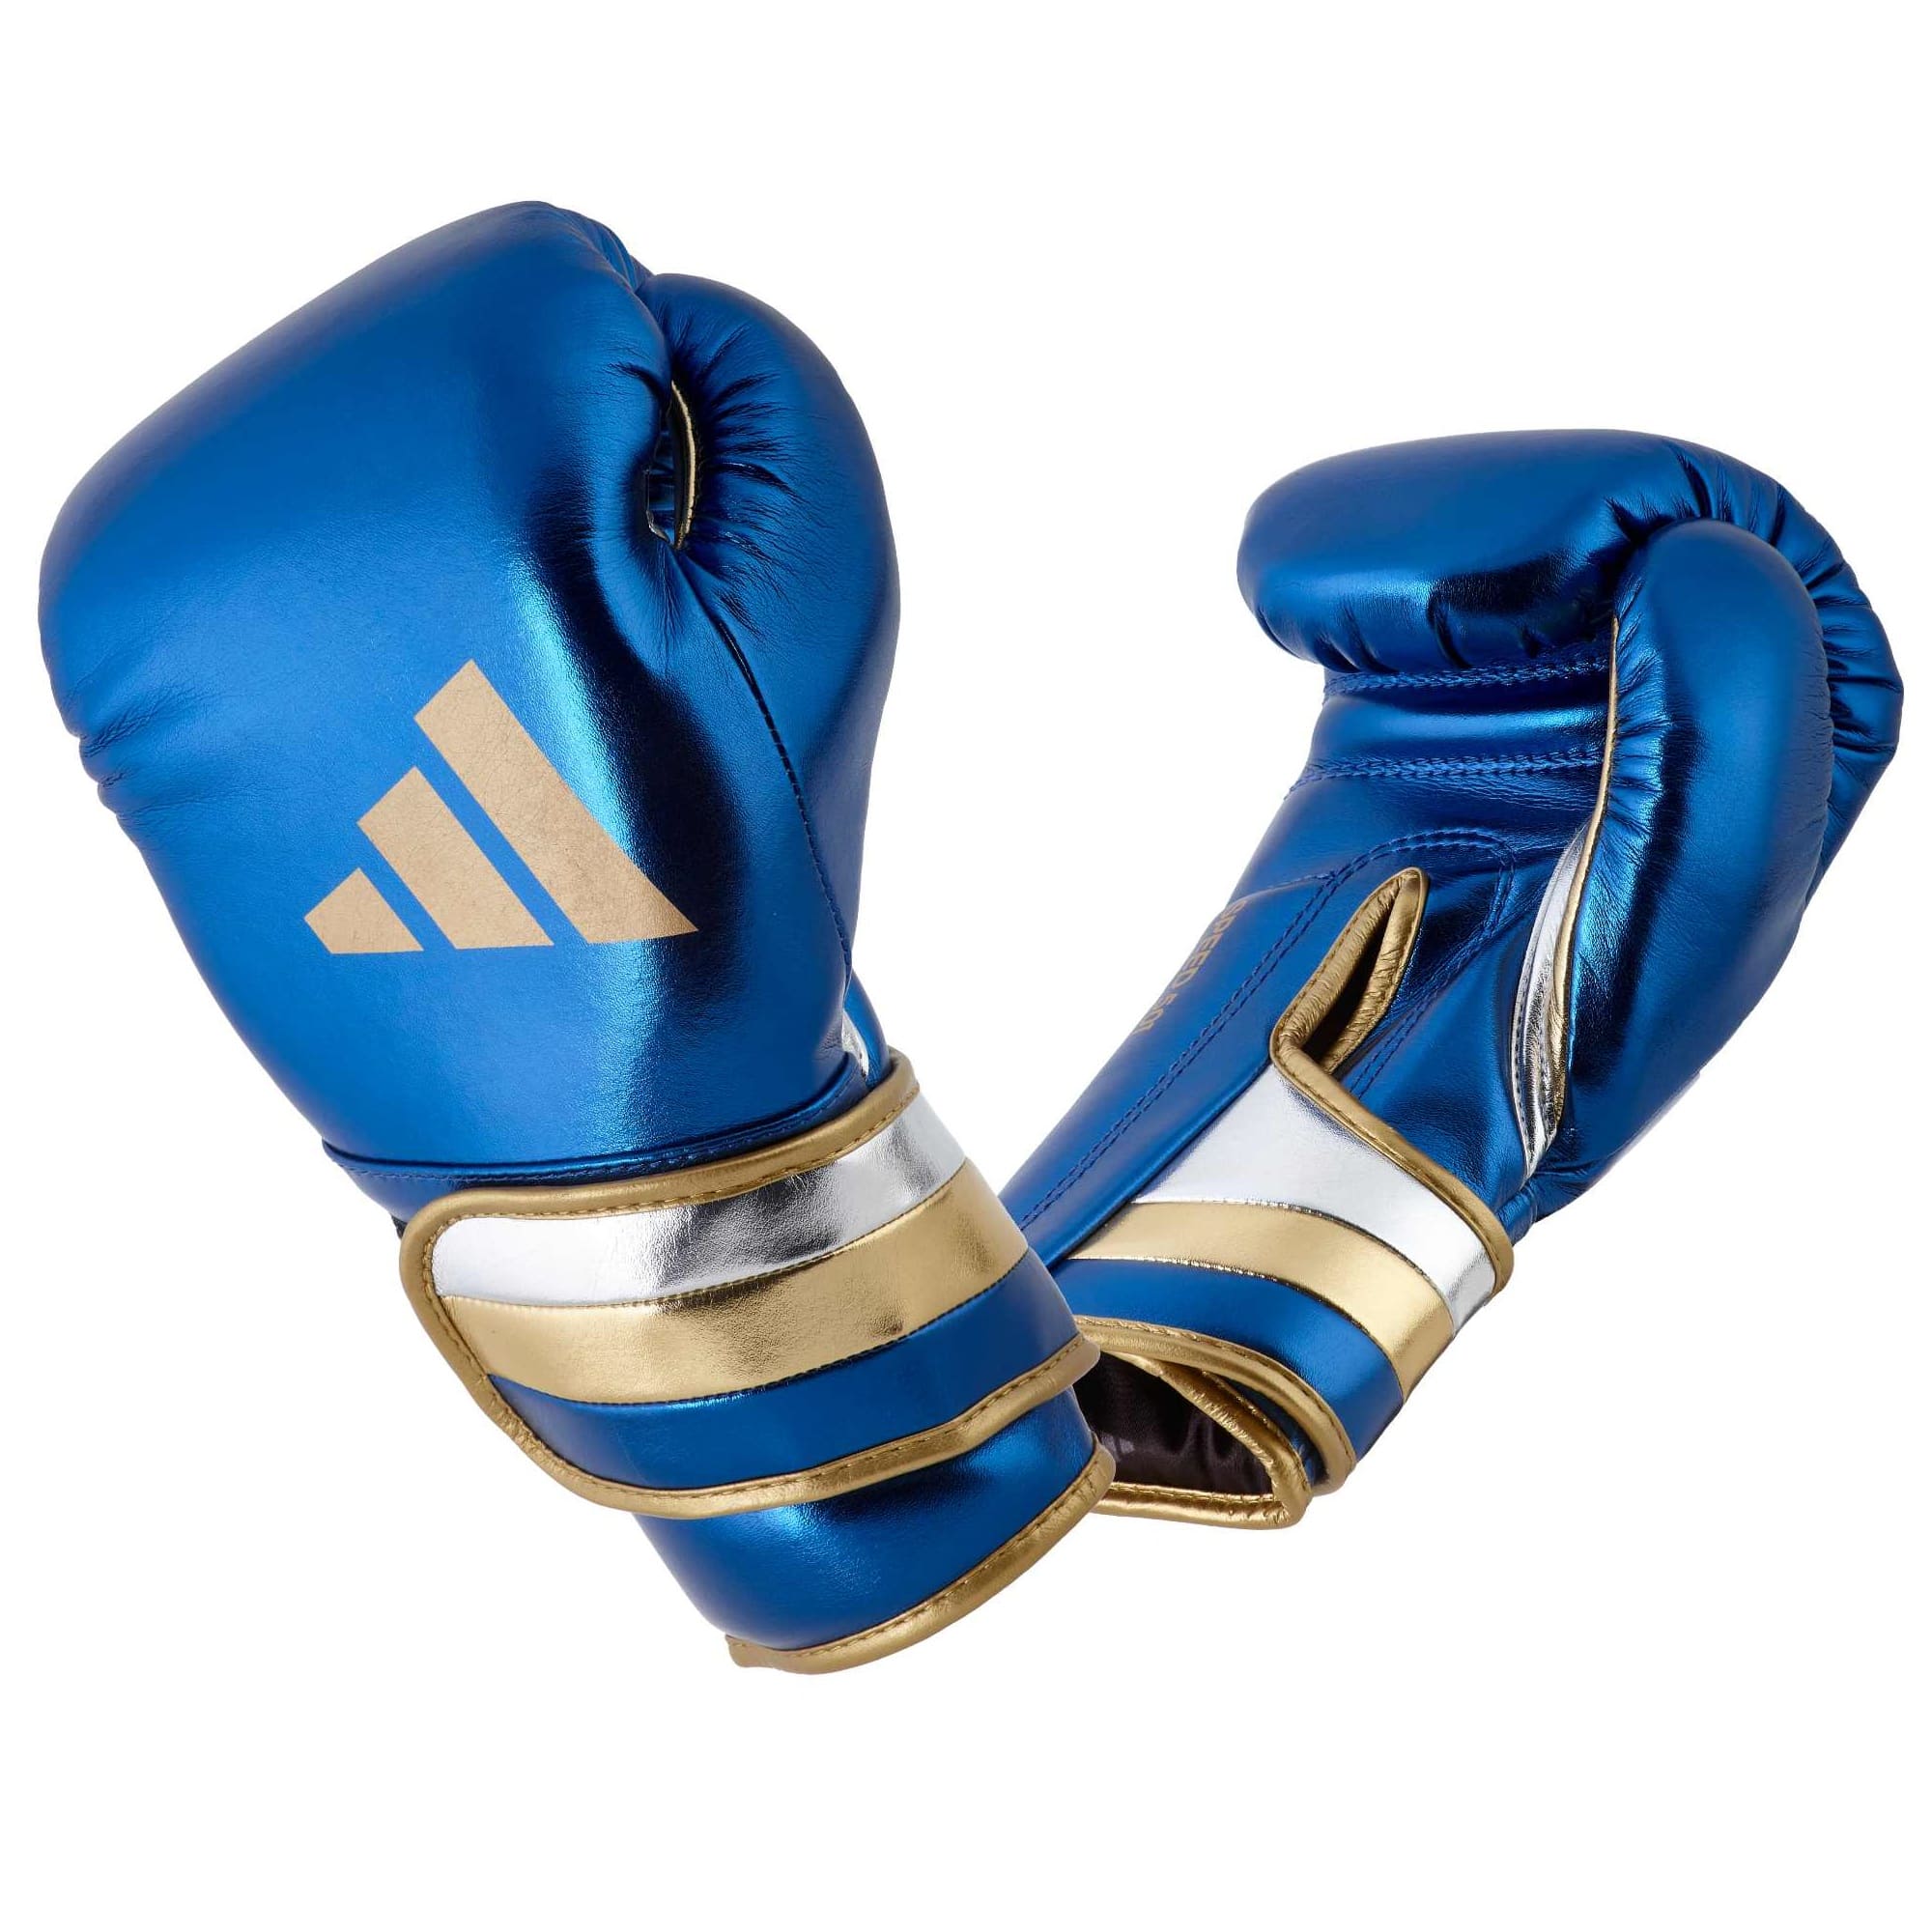 Adidas Boxhandschuhe SPEED EMPAROR Blau/Gold Online kaufen | ✓ 500